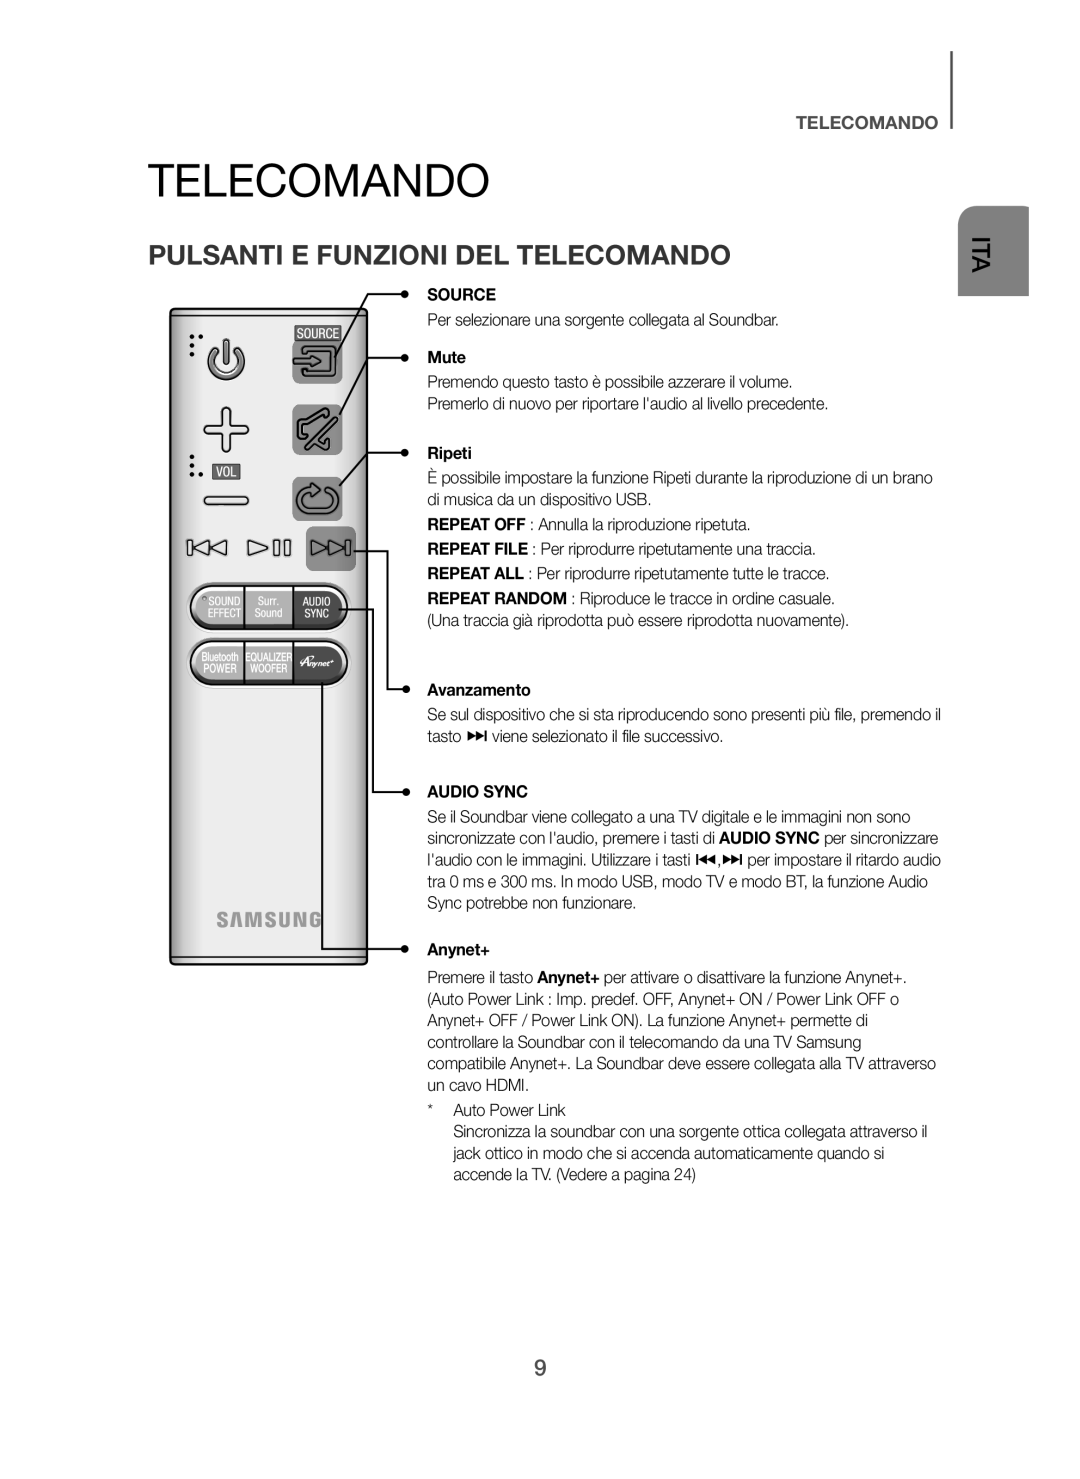 Samsung HW-H7501/ZF, HW-H7500/ZF manual Pulsanti E Funzioni DEL Telecomando, Mute, Ripeti, Avanzamento 